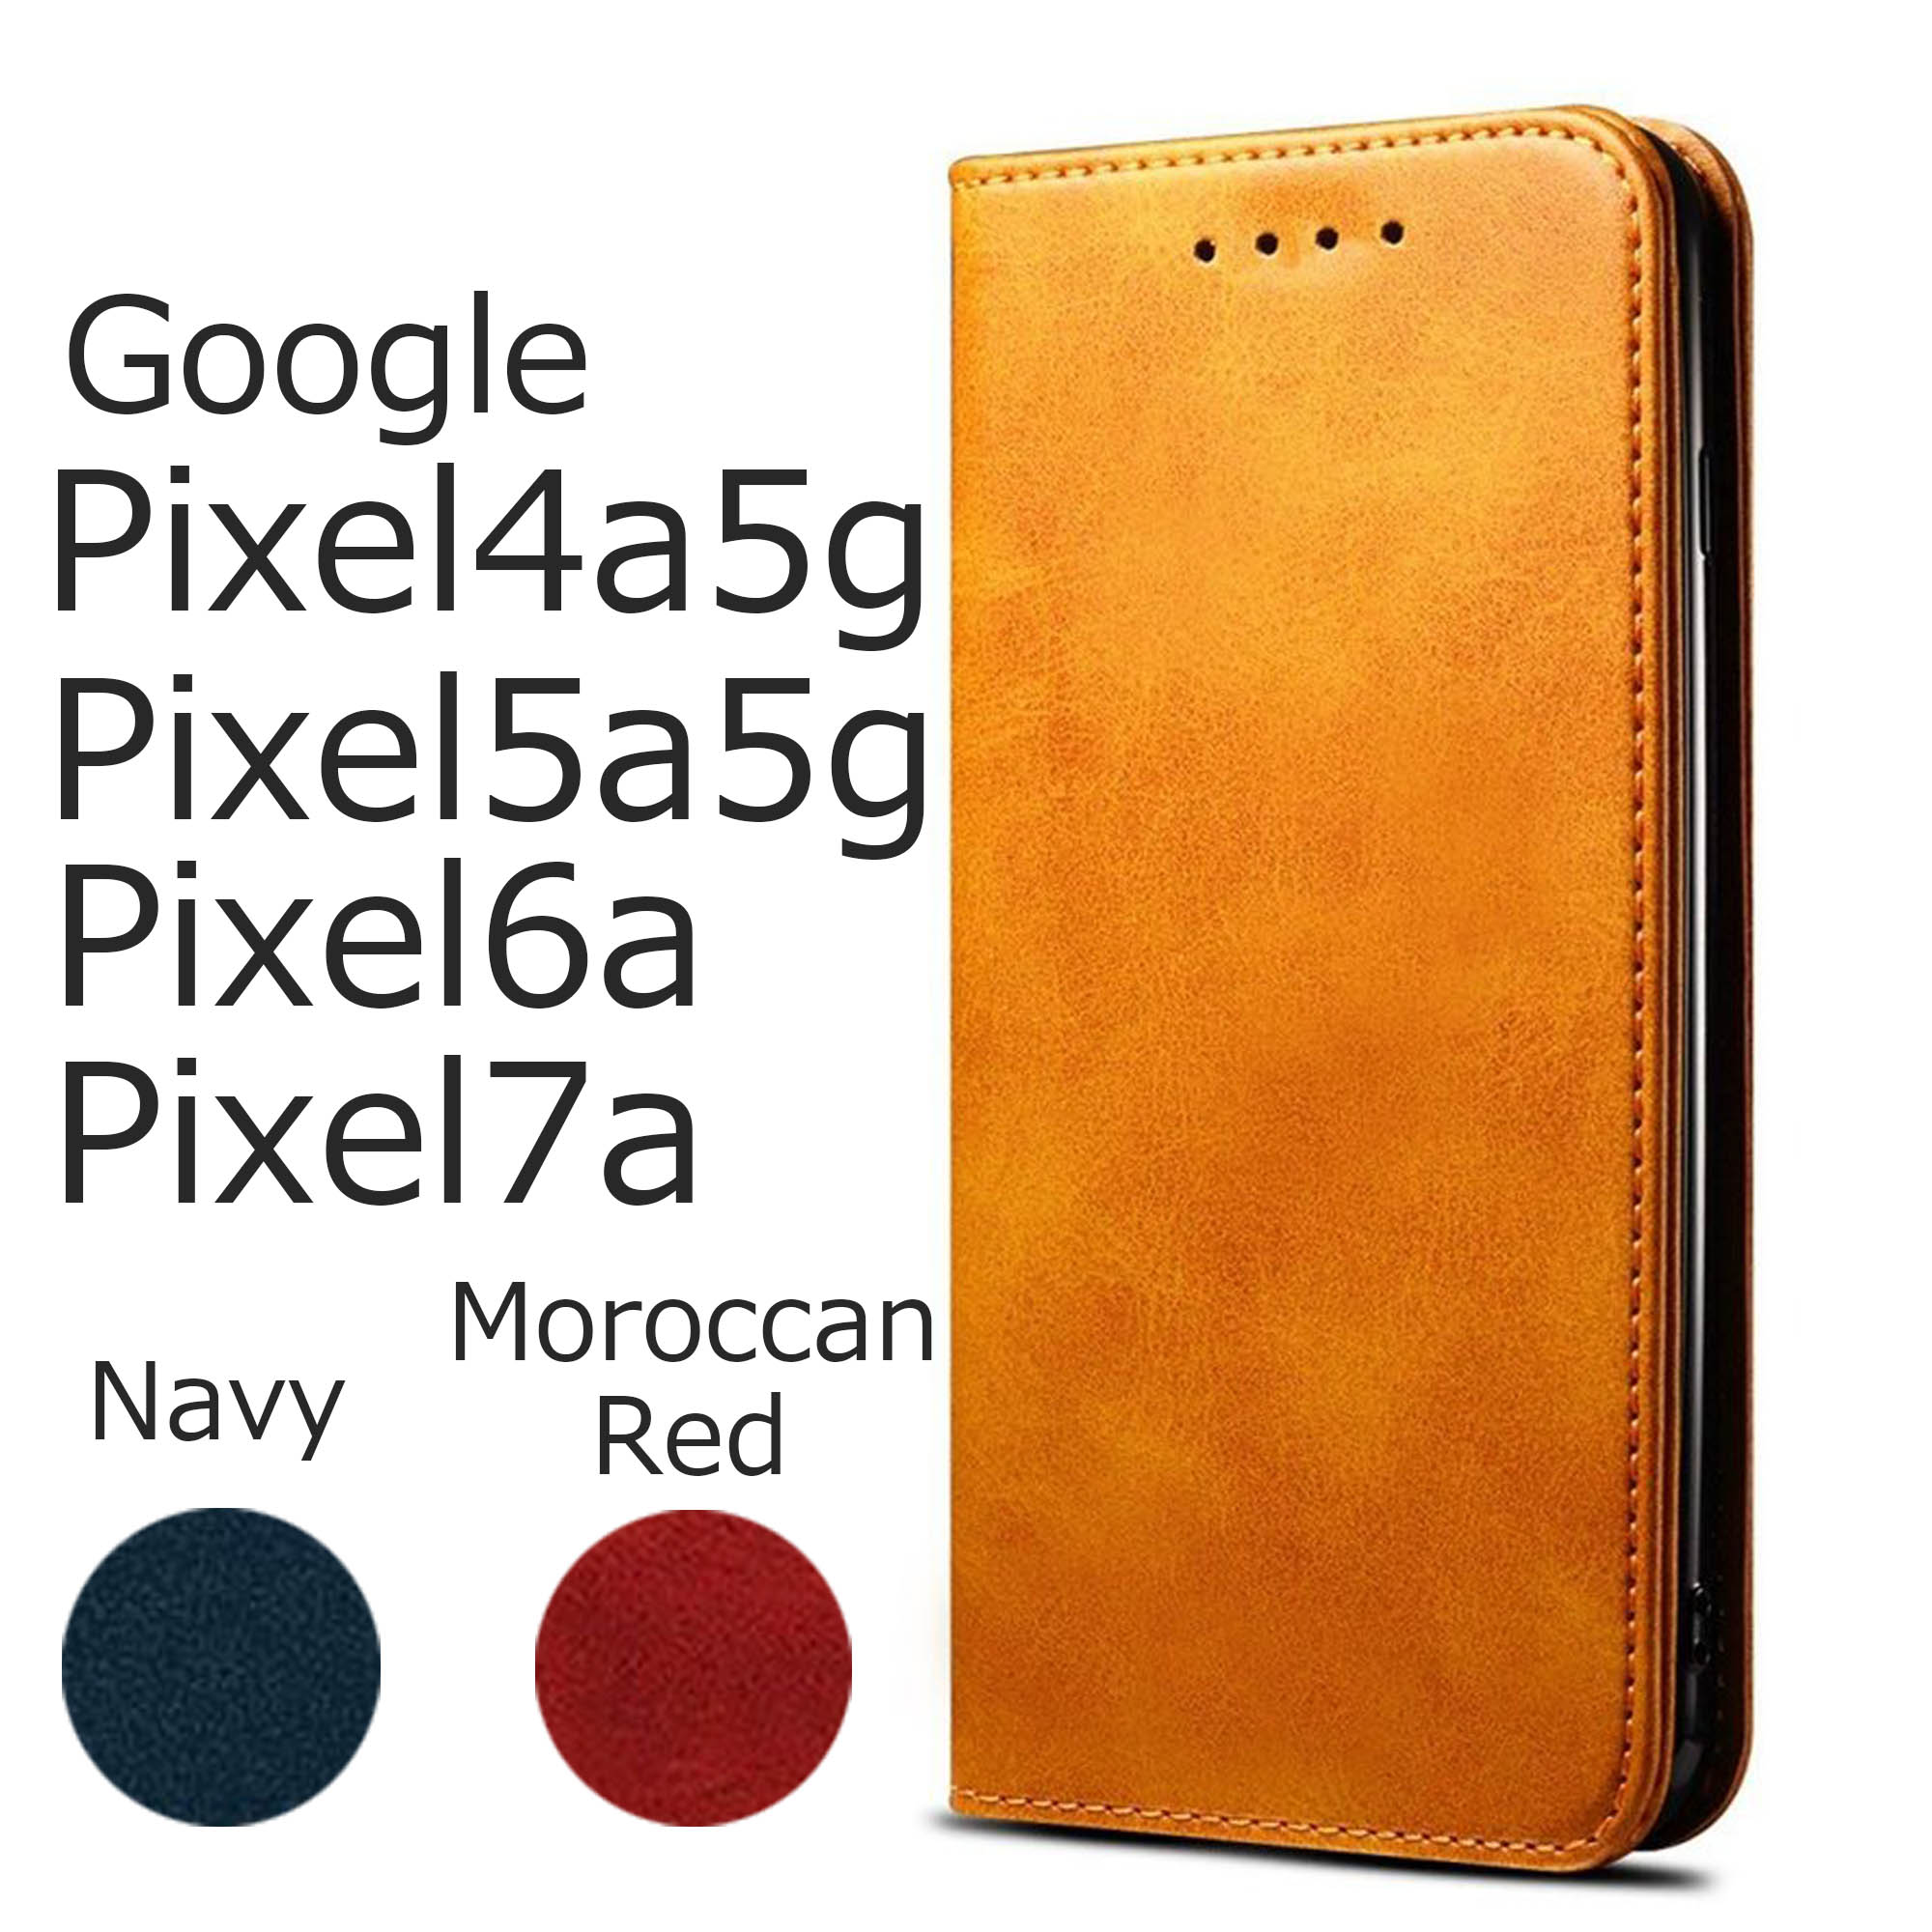 Google Pixel7a ケース 手帳型 Pixel6a カバー 5A 5G ケース 手帳型 Pixel5a 5g ケース 手帳型 ピクセル6a ピクセル5a5g スマホケース ベルトなし 茶色 ブラウン 赤 レッド 紺 ネイビー レザー 革 シンプル 送料無料